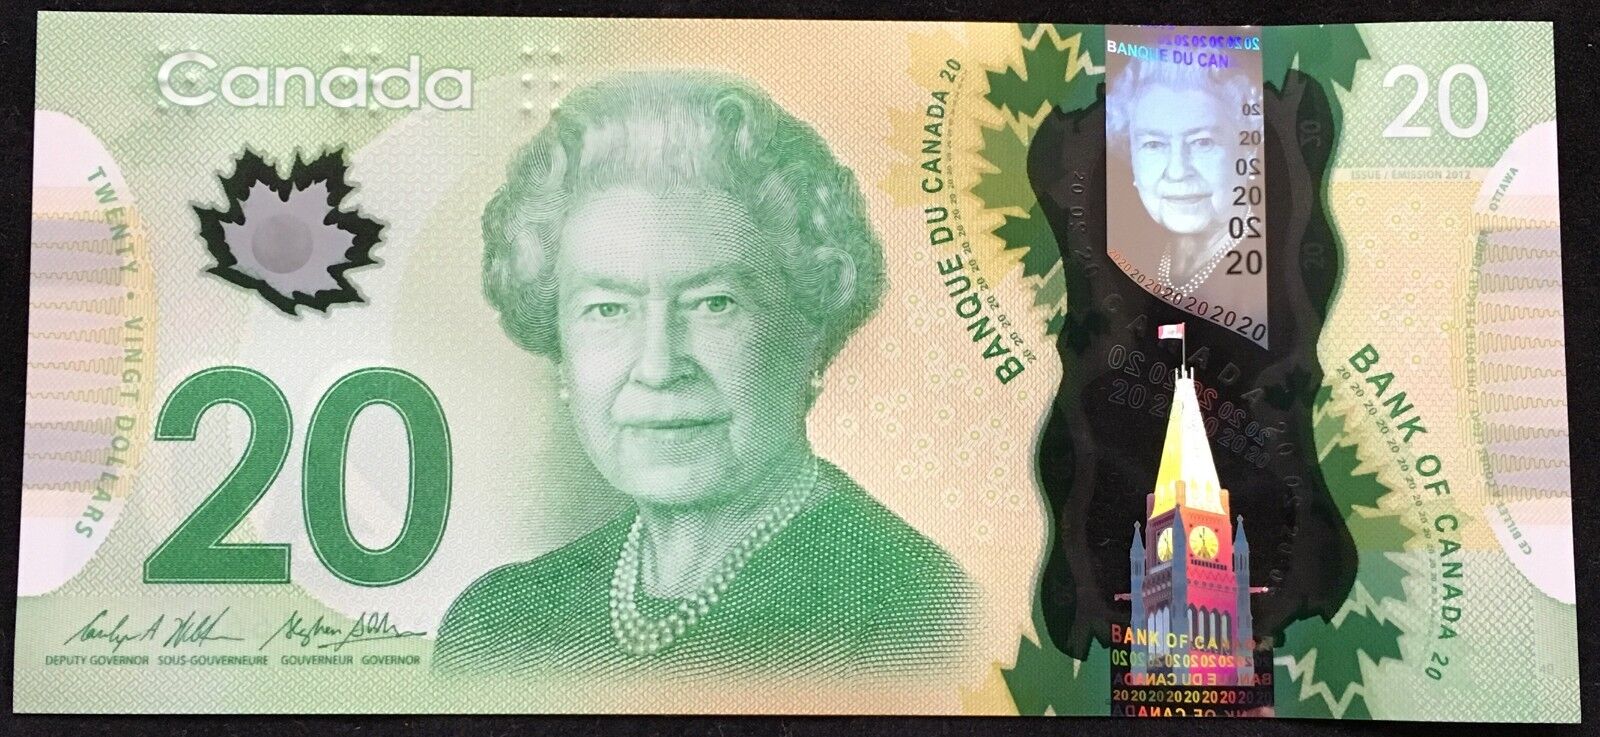 Banknote - 2012 Canada $20 Twenty Dollar Polymer, P108b, UNC